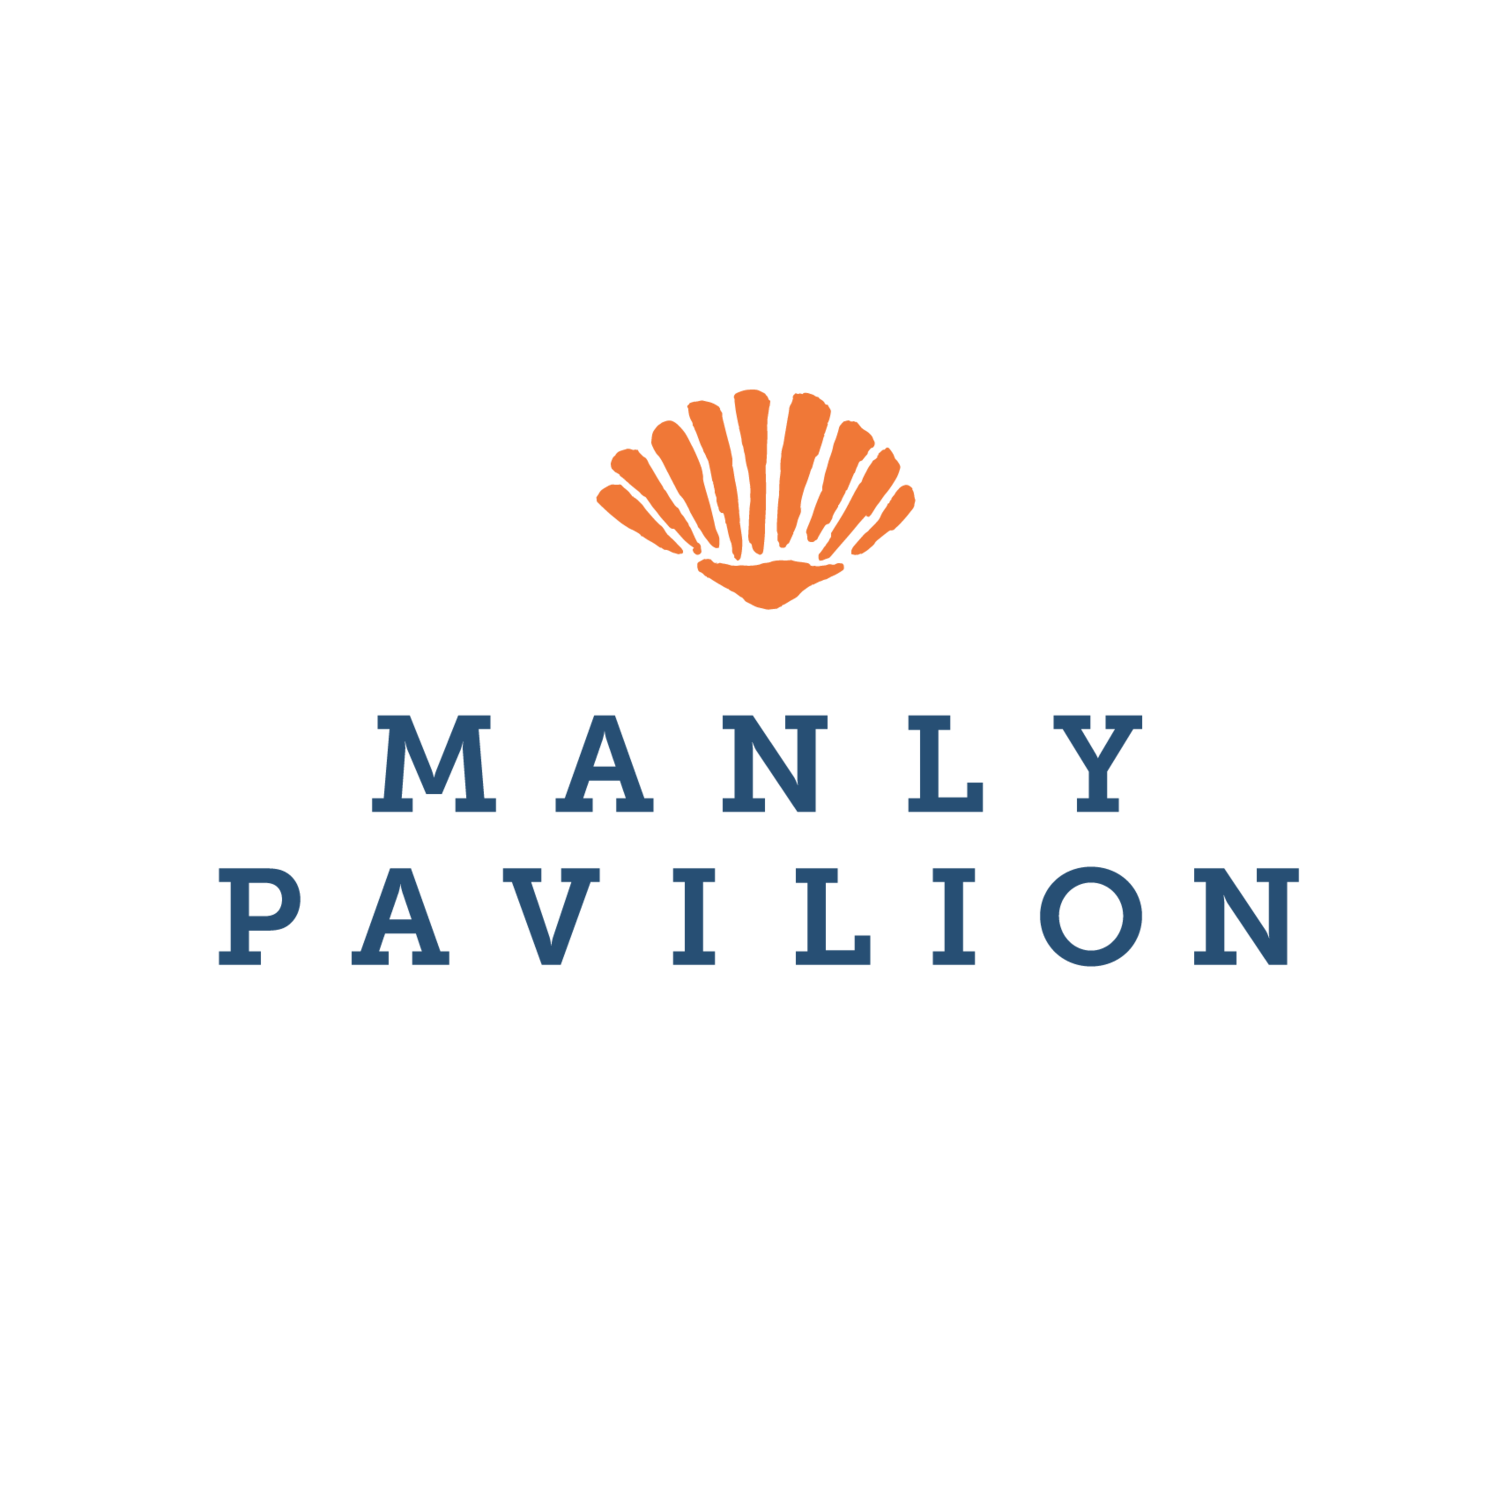 Manly Pavilion